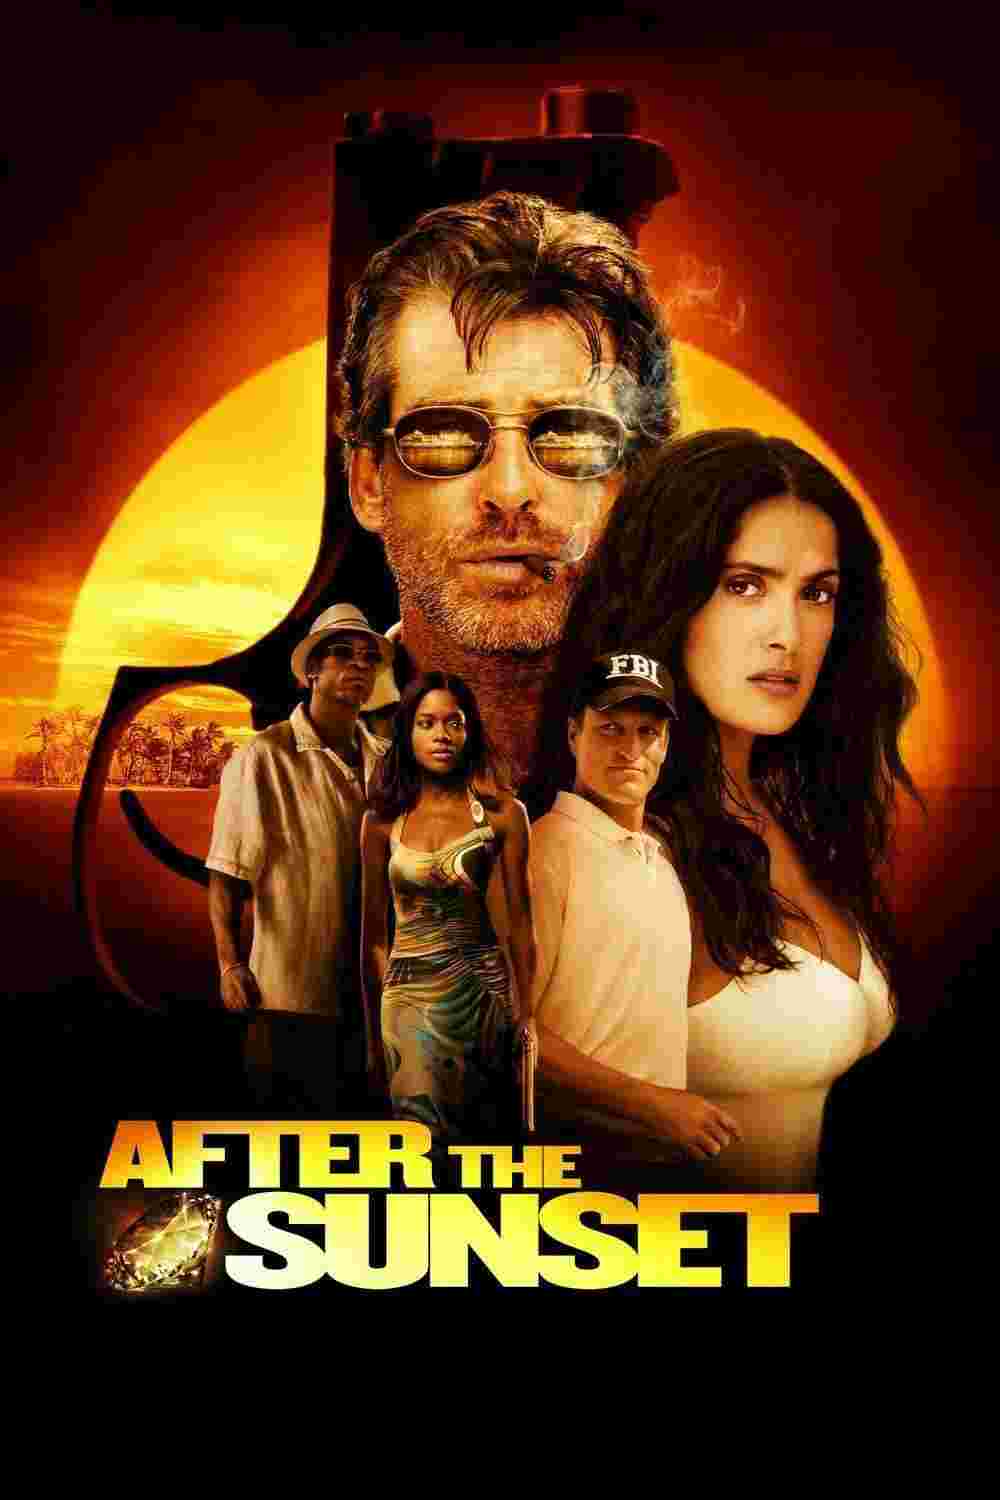 After the Sunset (2004) Pierce Brosnan